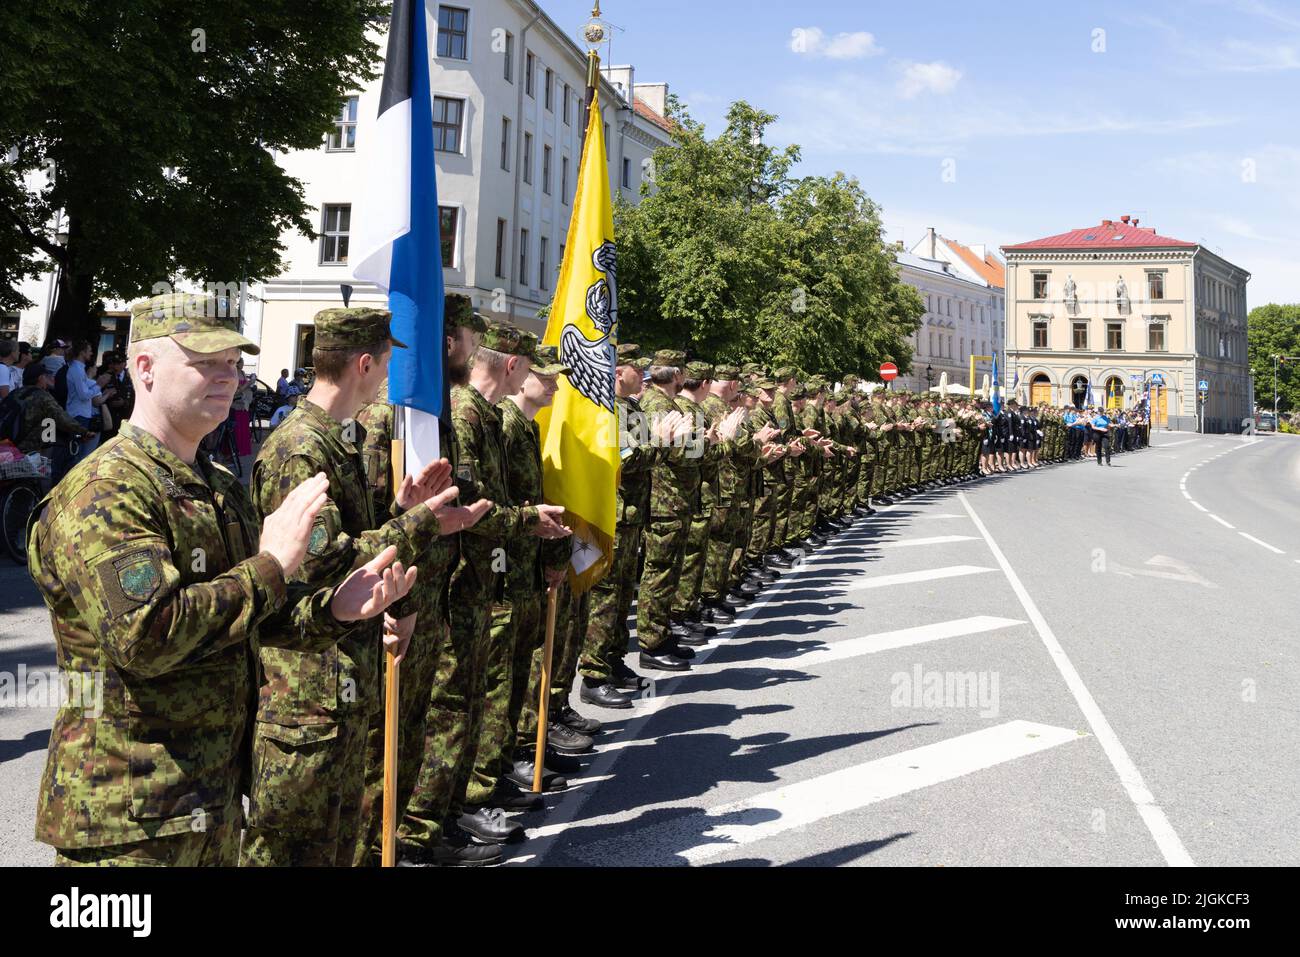 Ligue estonienne de défense; une armée de soldats paramilitaires défilent le jour de la victoire, le 23rd juin, à Tartu, Estonie, Europe Banque D'Images